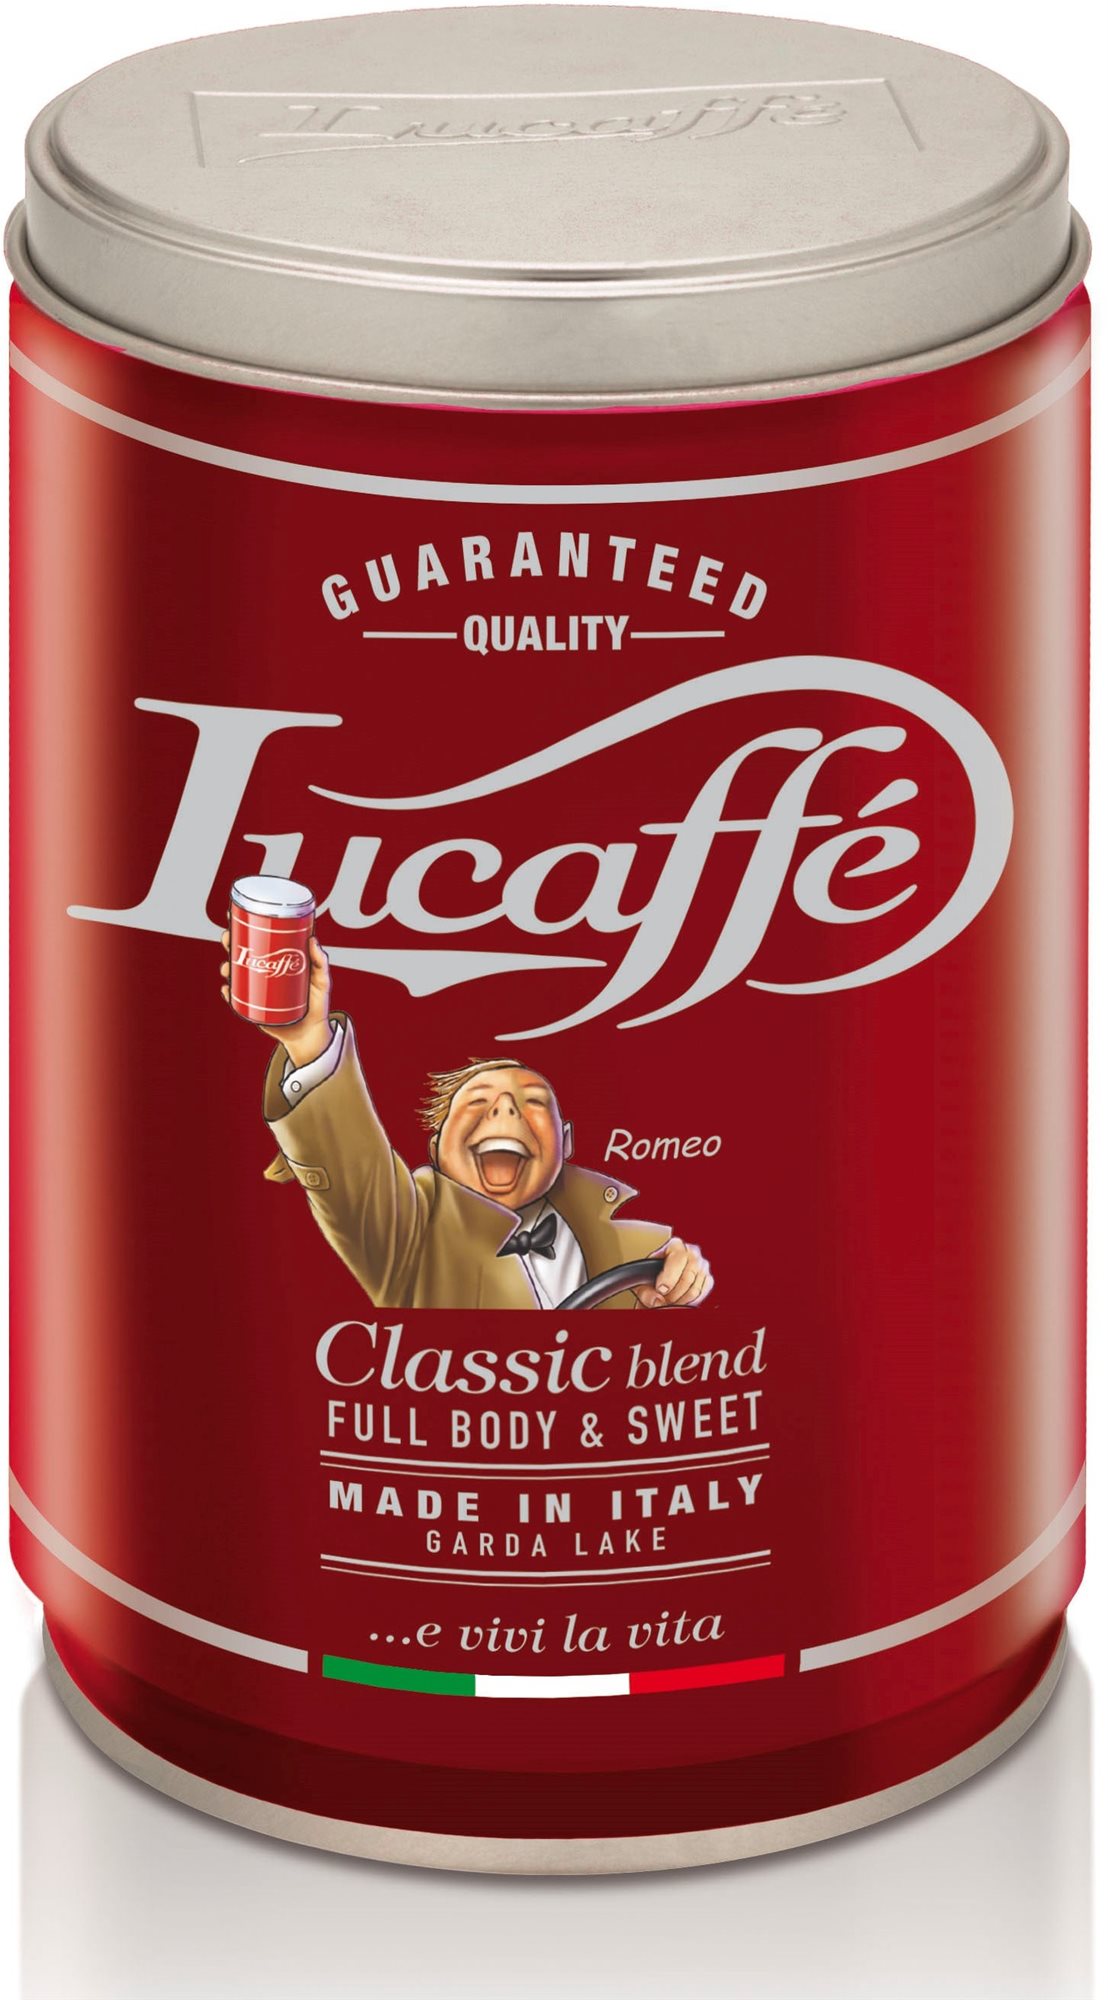 Kávé Lucaffe Classic, szemes, 250 g